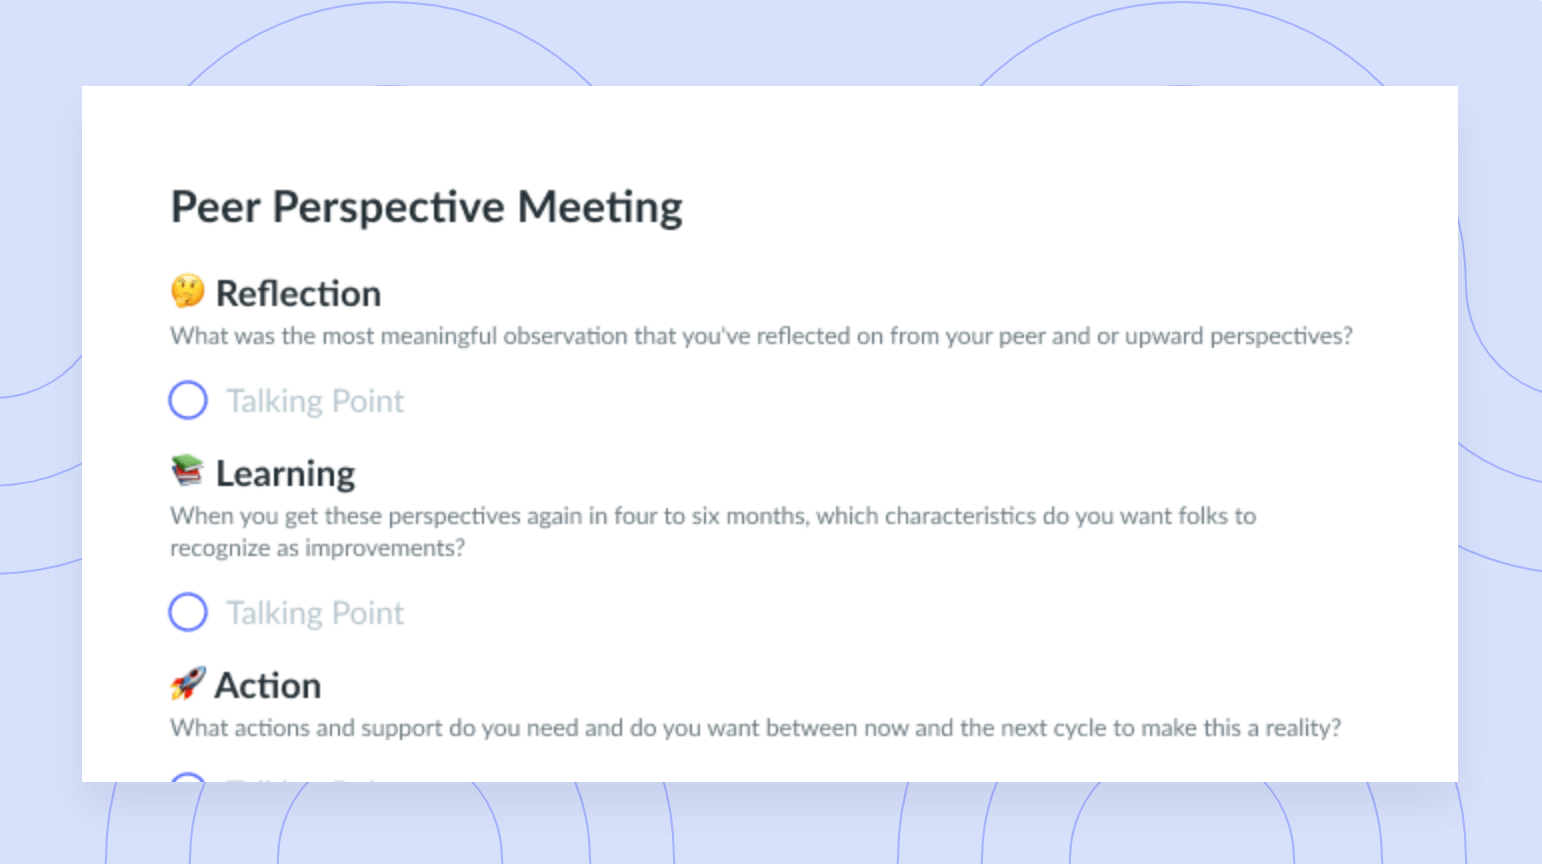 Peer Perspective Meeting Template